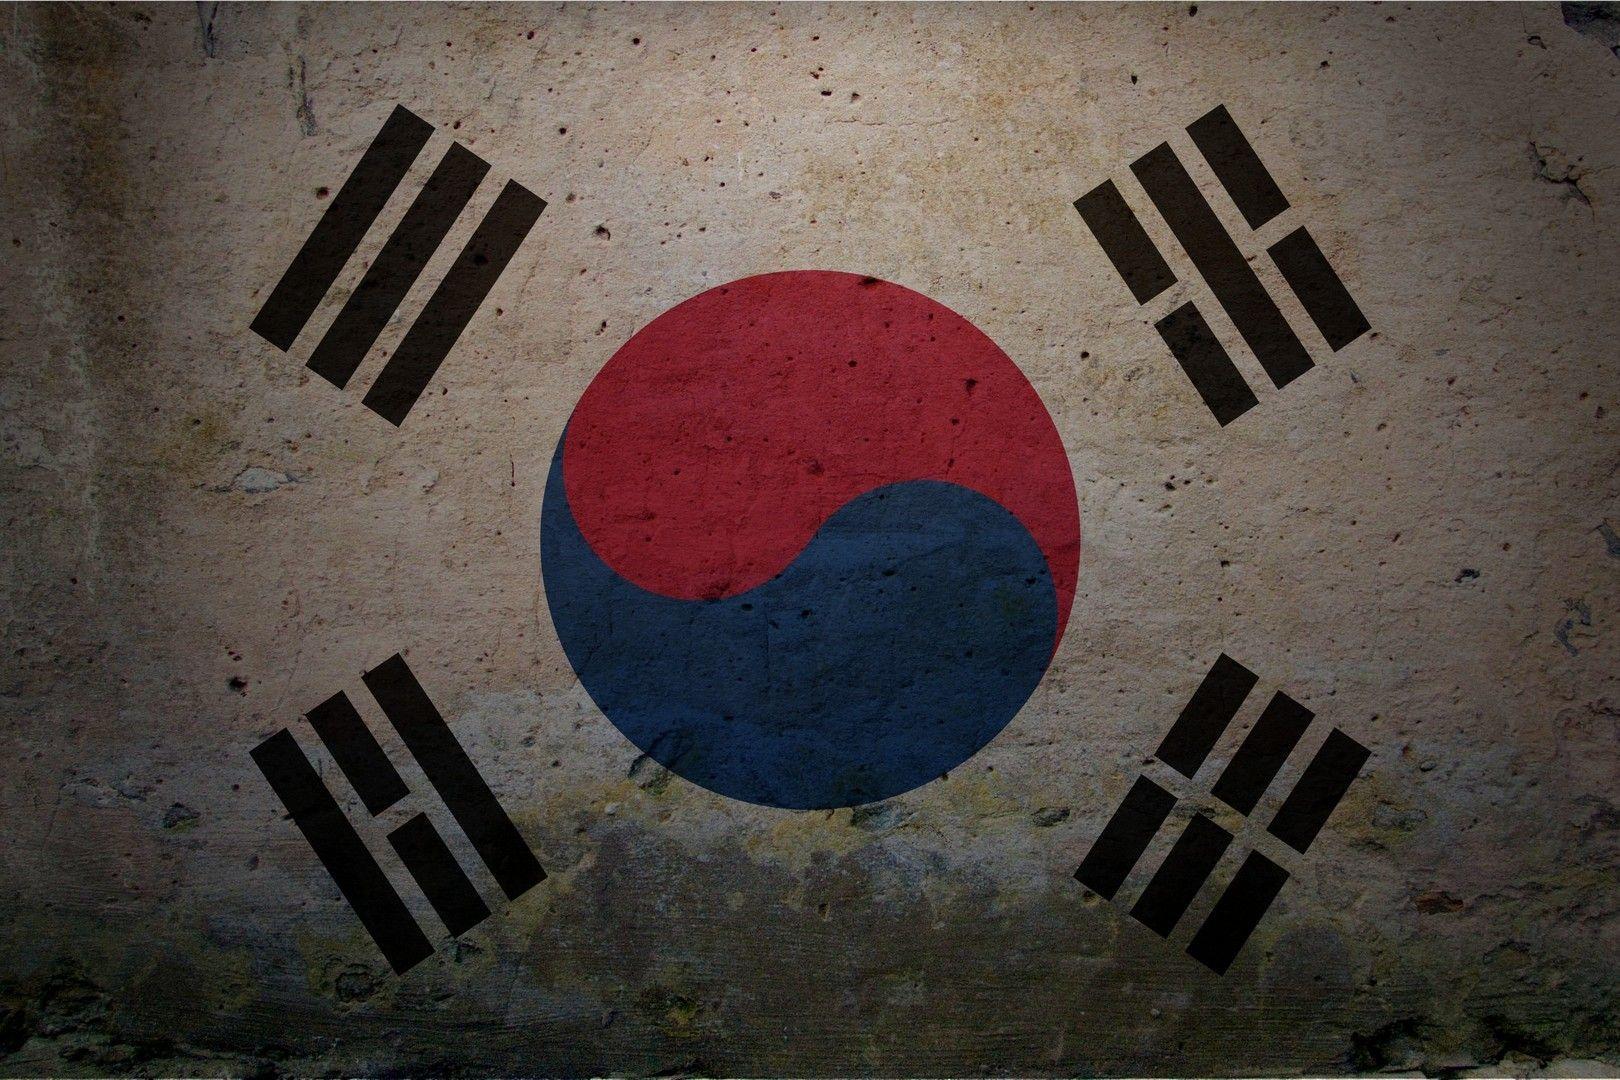 Republic of Korea flag wallpaper. Flags wallpaper